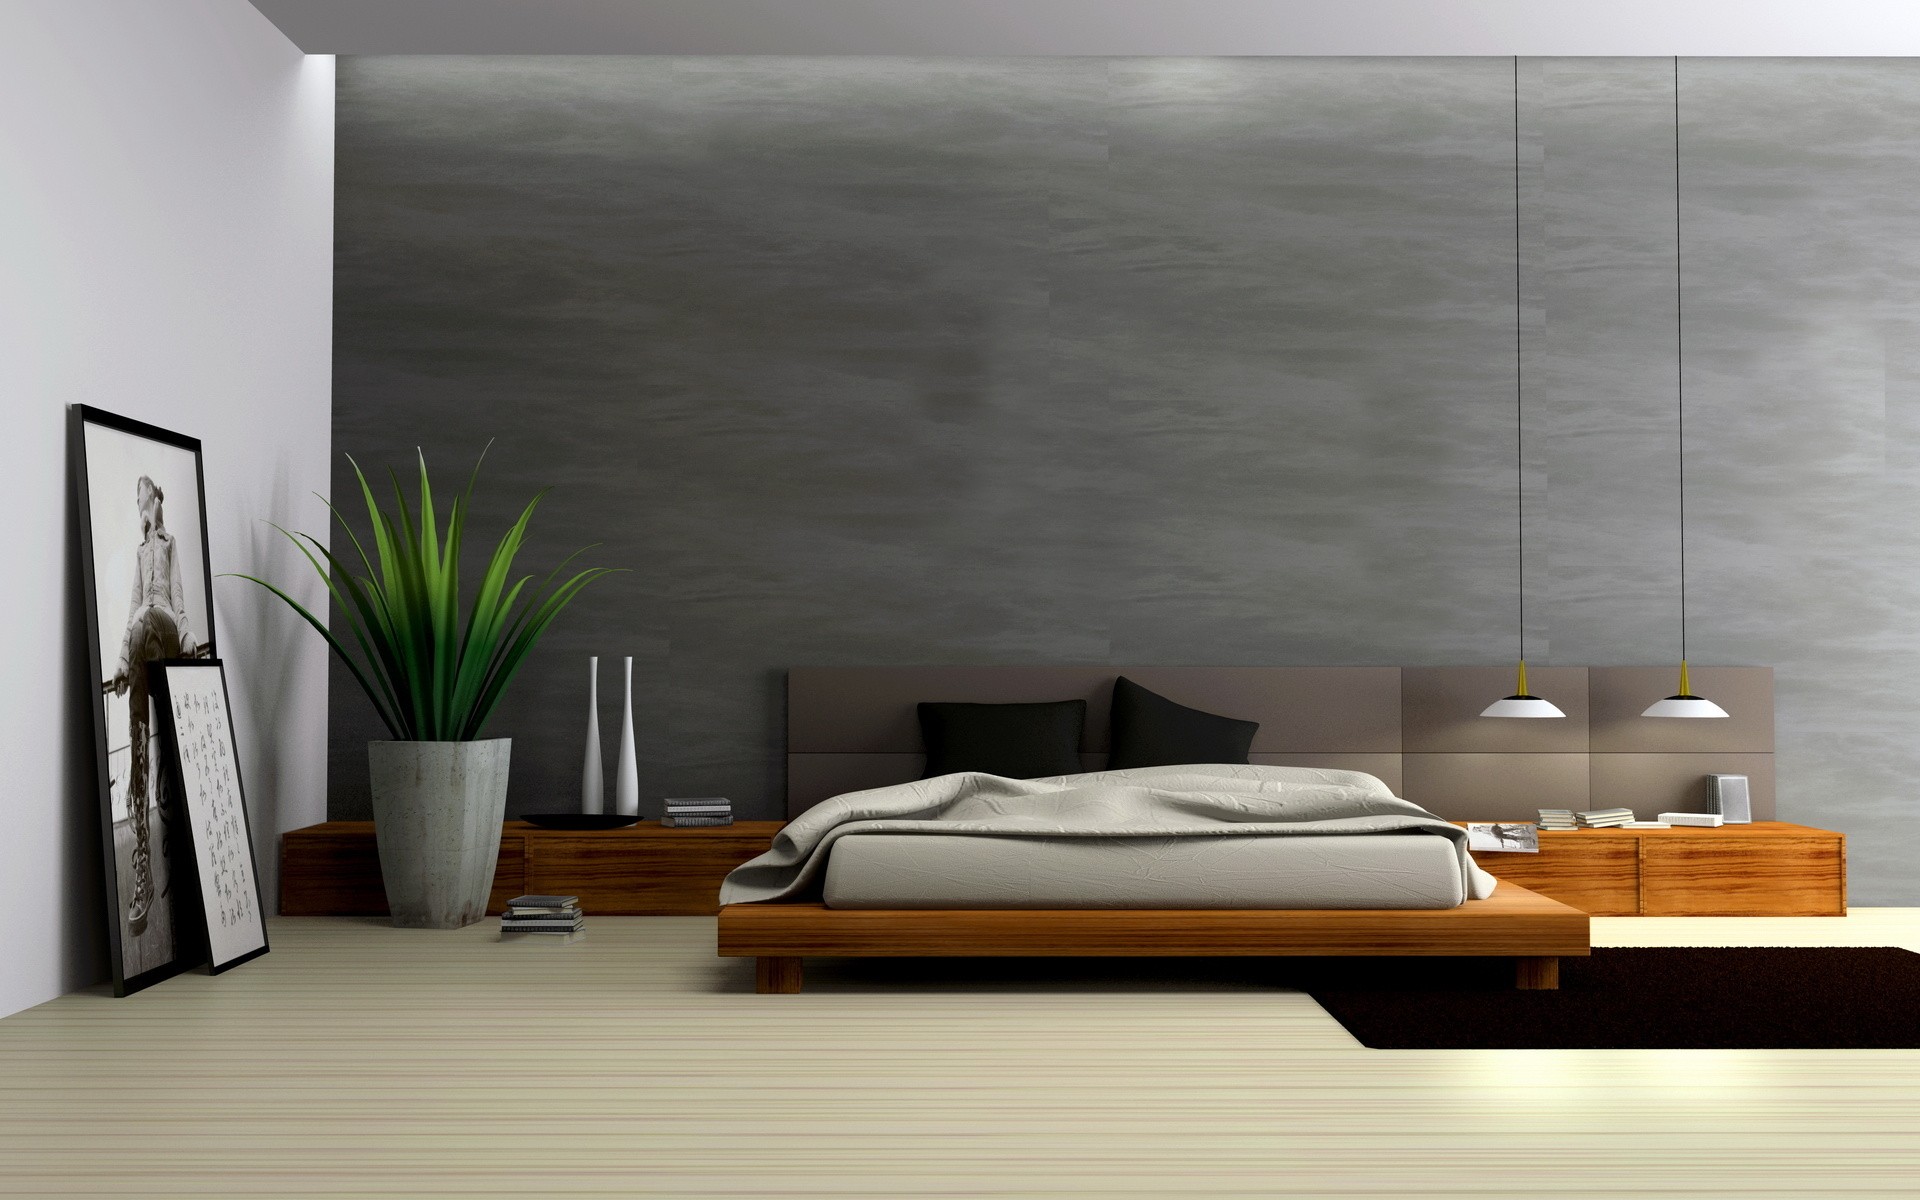 architecture, room, interior, bedroom - desktop wallpaper